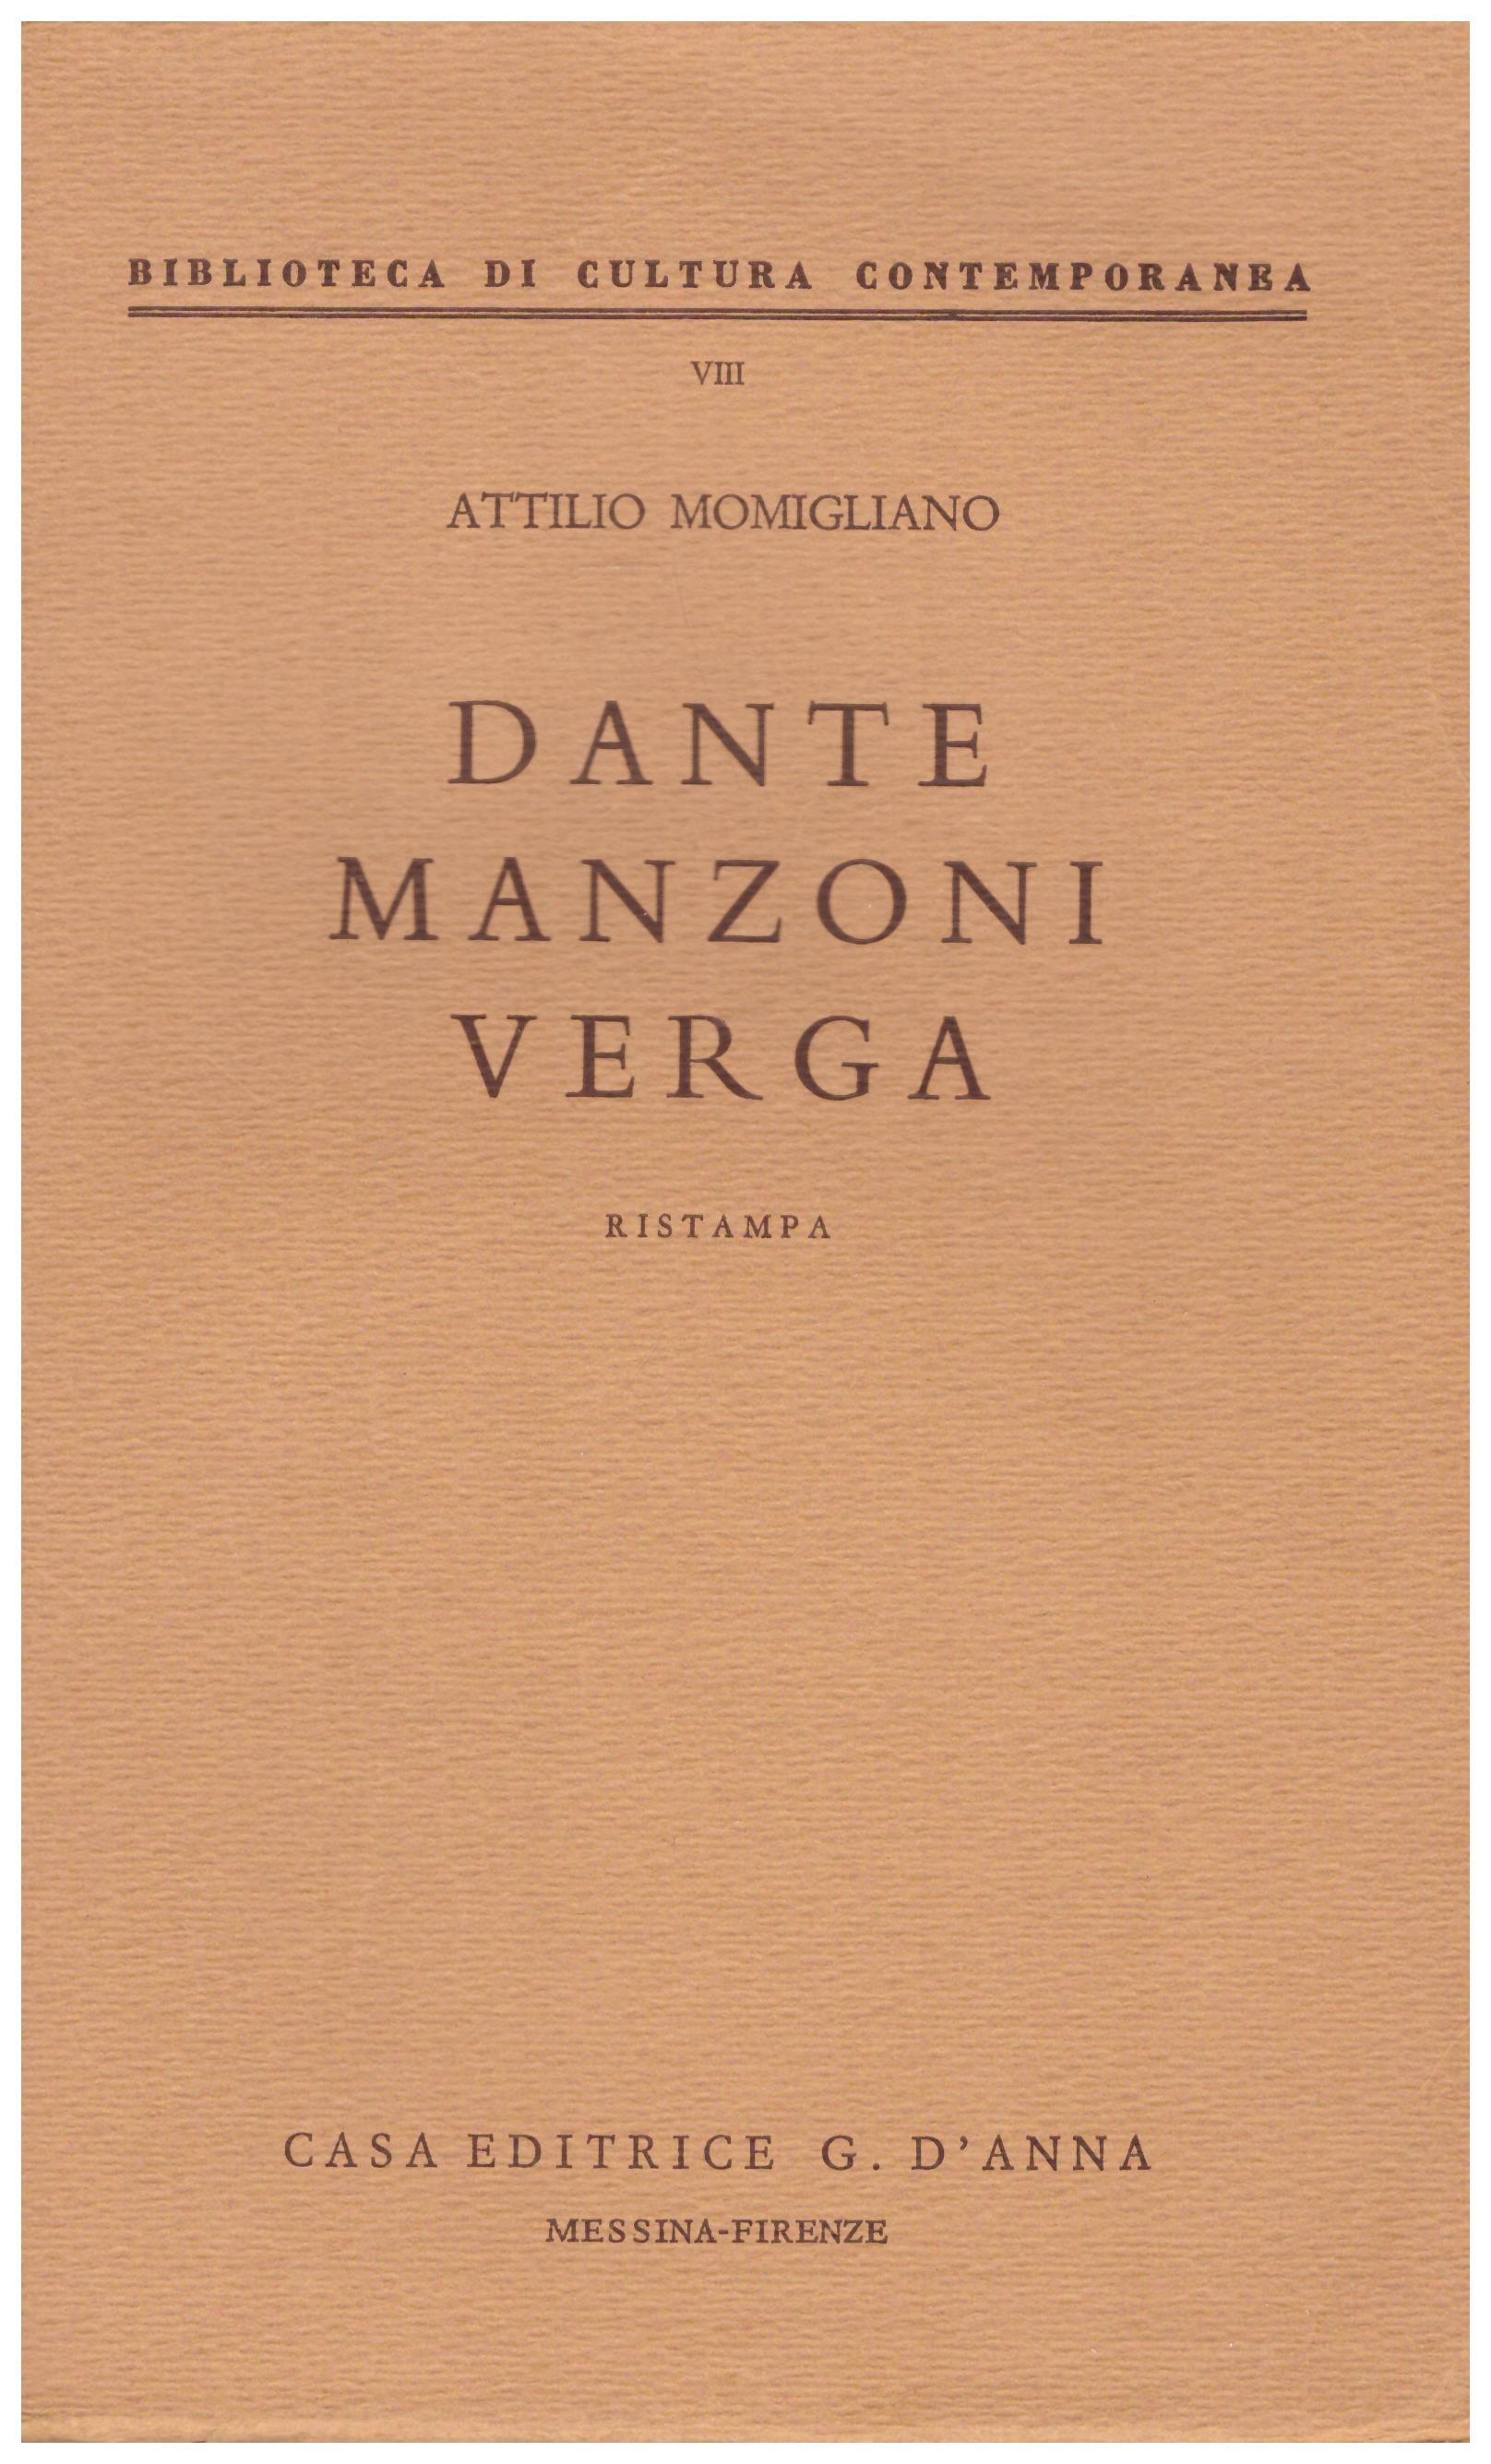 Titolo: Biblioteca di cultura contemporanea 8, Dante Manzoni Verga  Autore : Attilio Momigliano  Editore: Casa Editrice G.Anna Messina-Firenze 1962